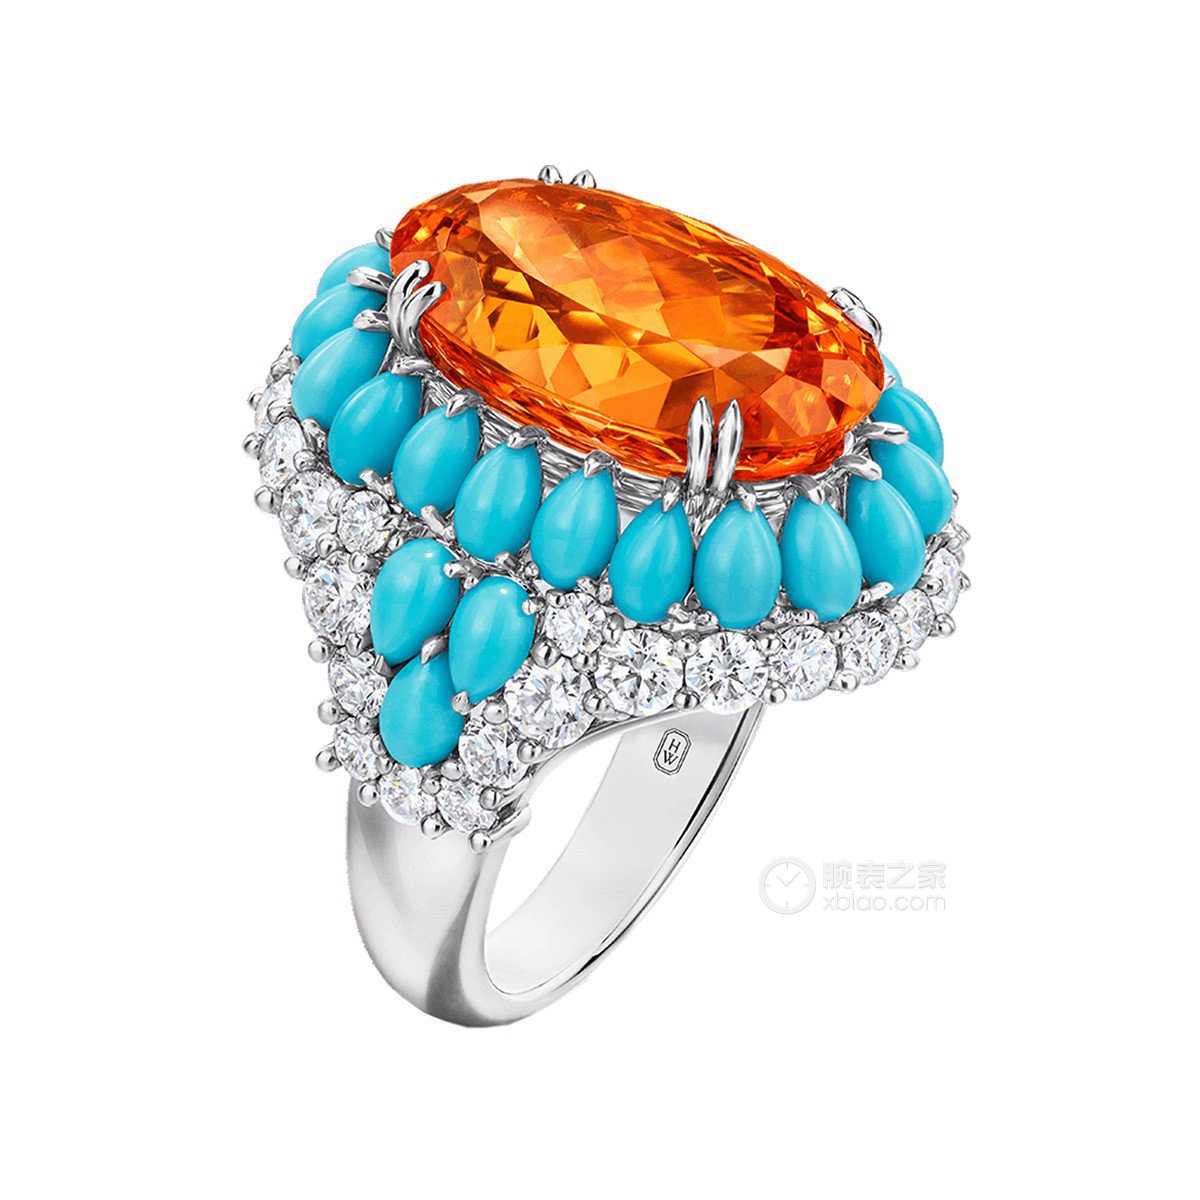 海瑞温斯顿Winston Candy高级珠宝系列浓橙色石榴石配绿松石和钻石戒指戒指